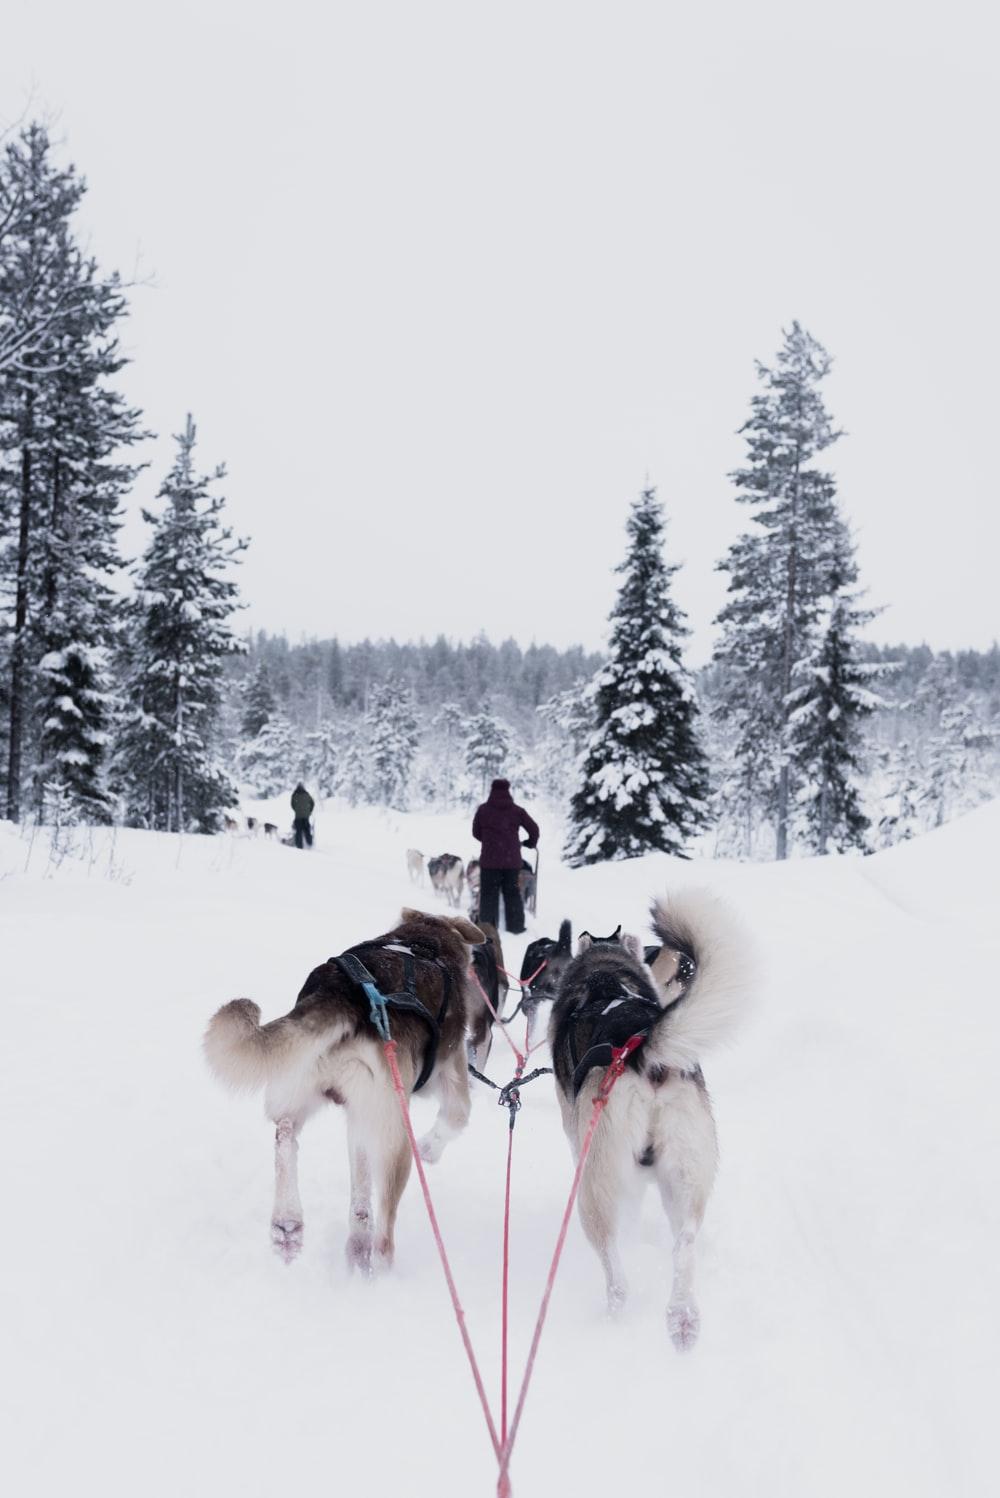 Dog sledding in Rovaniemi